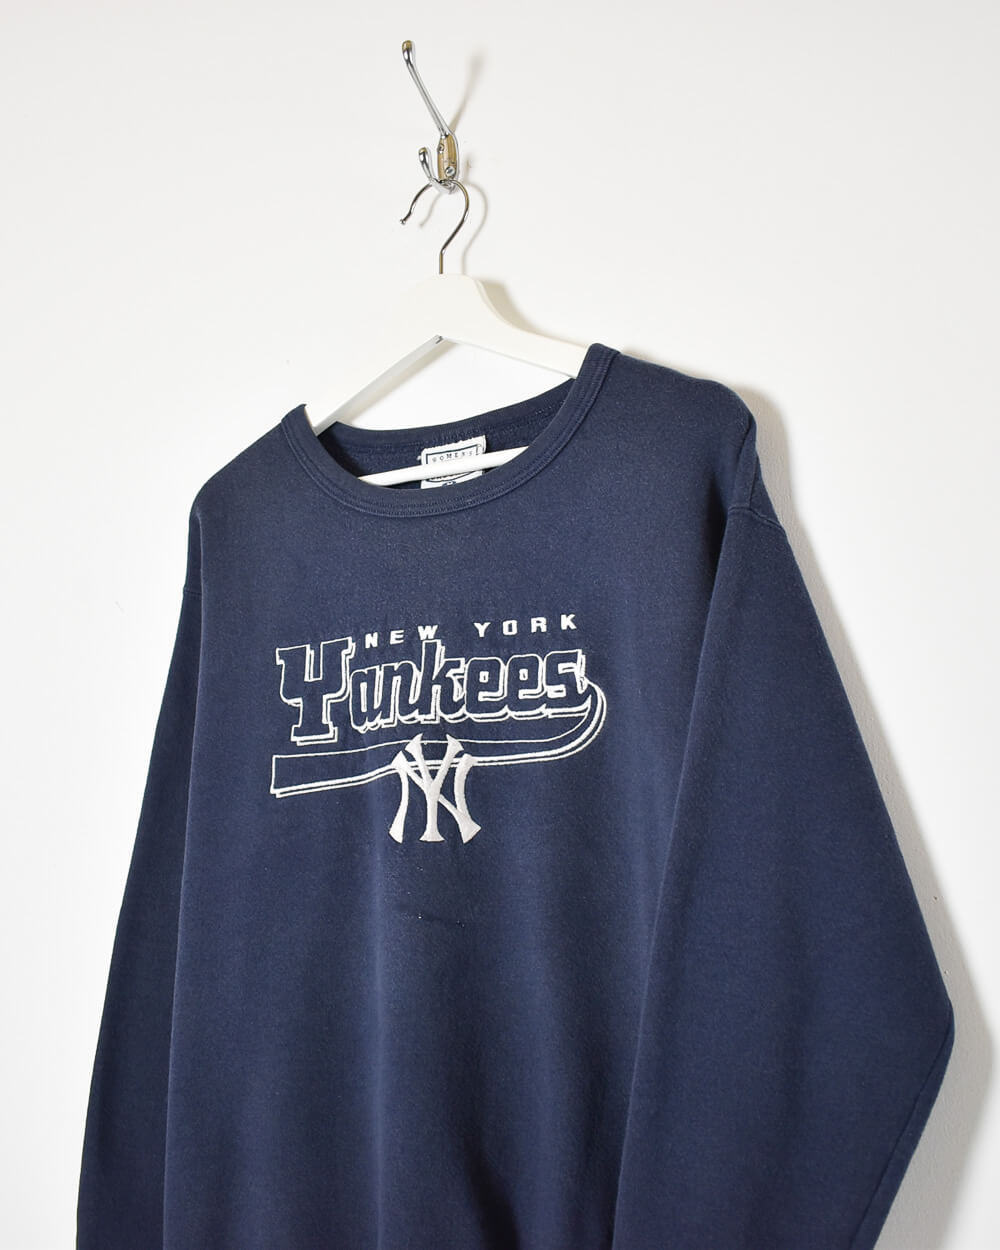 Navy New York Yankees Sweatshirt - Medium